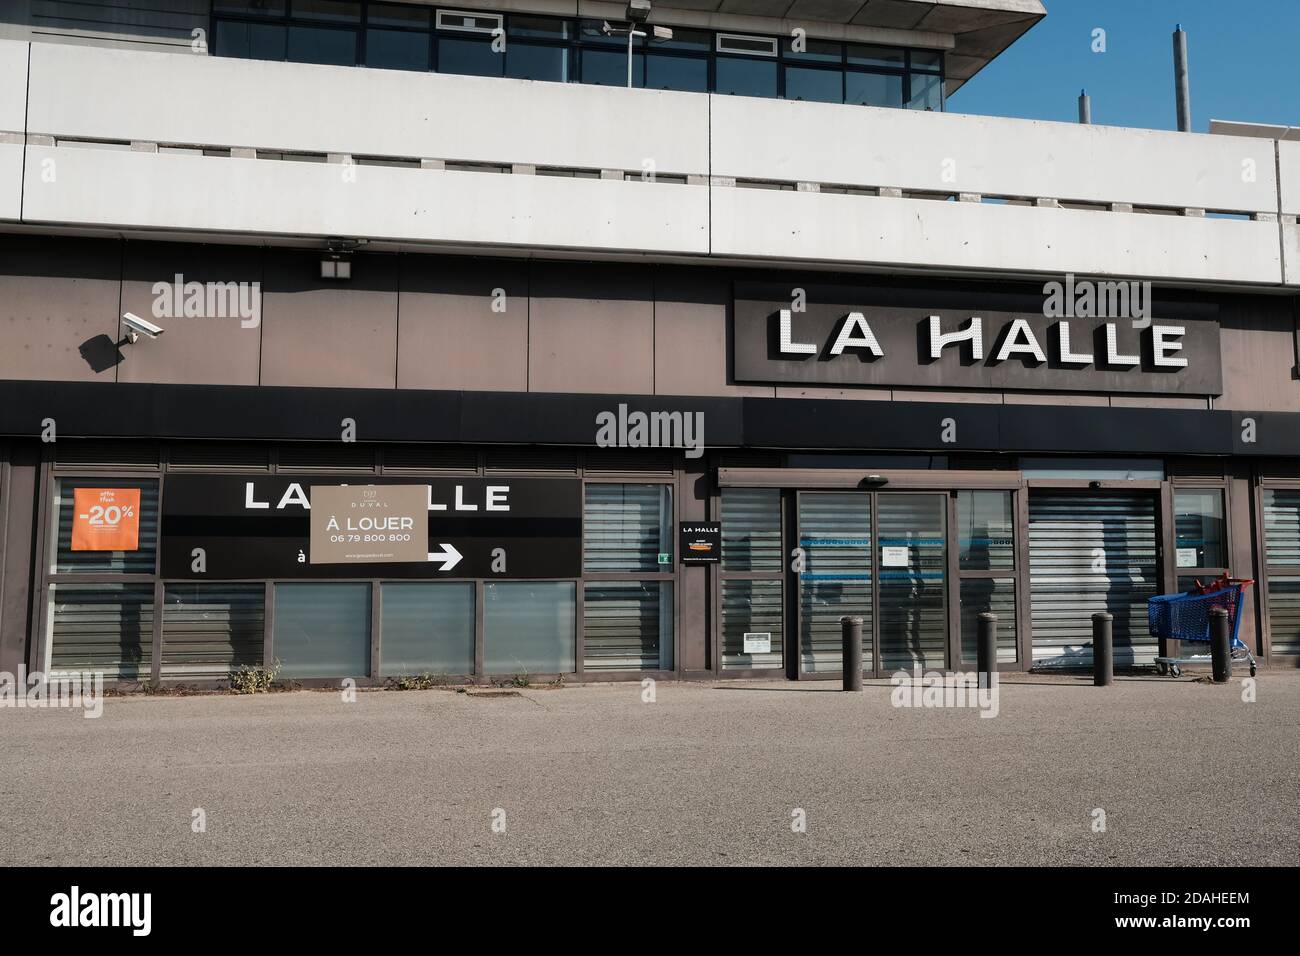 Aufgrund der Wirtschaftskrise der Coronavirus-Pandemie wird ein La Halle-Geschäft der André-Gruppe wegen Insolvenz geschlossen. Stockfoto